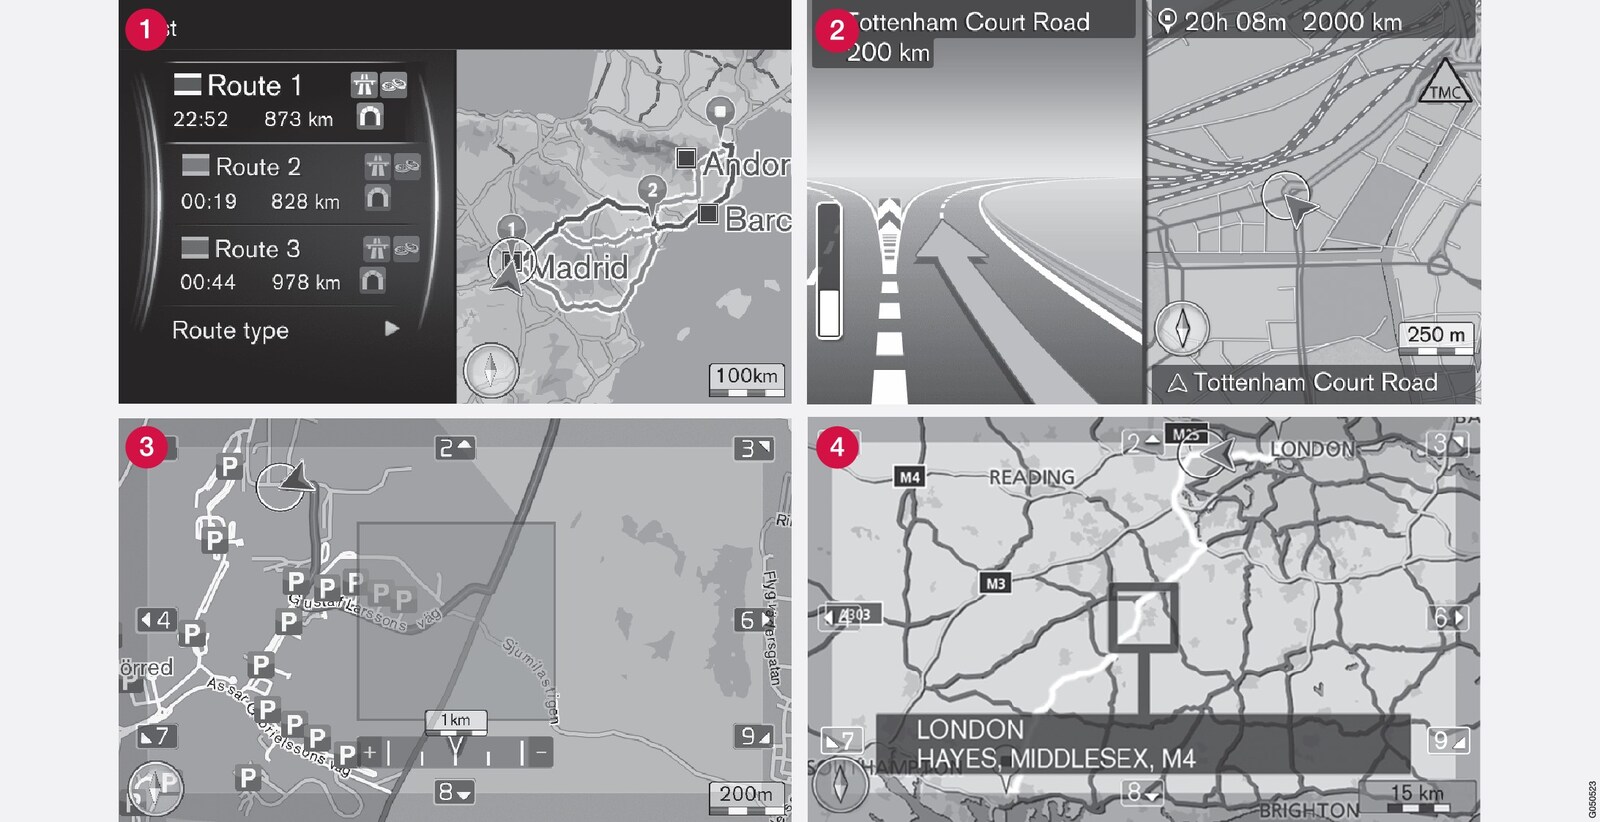 目前位置的地圖影像範例。螢幕可顯示的畫面包括旅程、路口地圖和卷軸模式等等。注意：圖示僅為概略性質 - 細節可能因軟體版本及所屬市場而異。